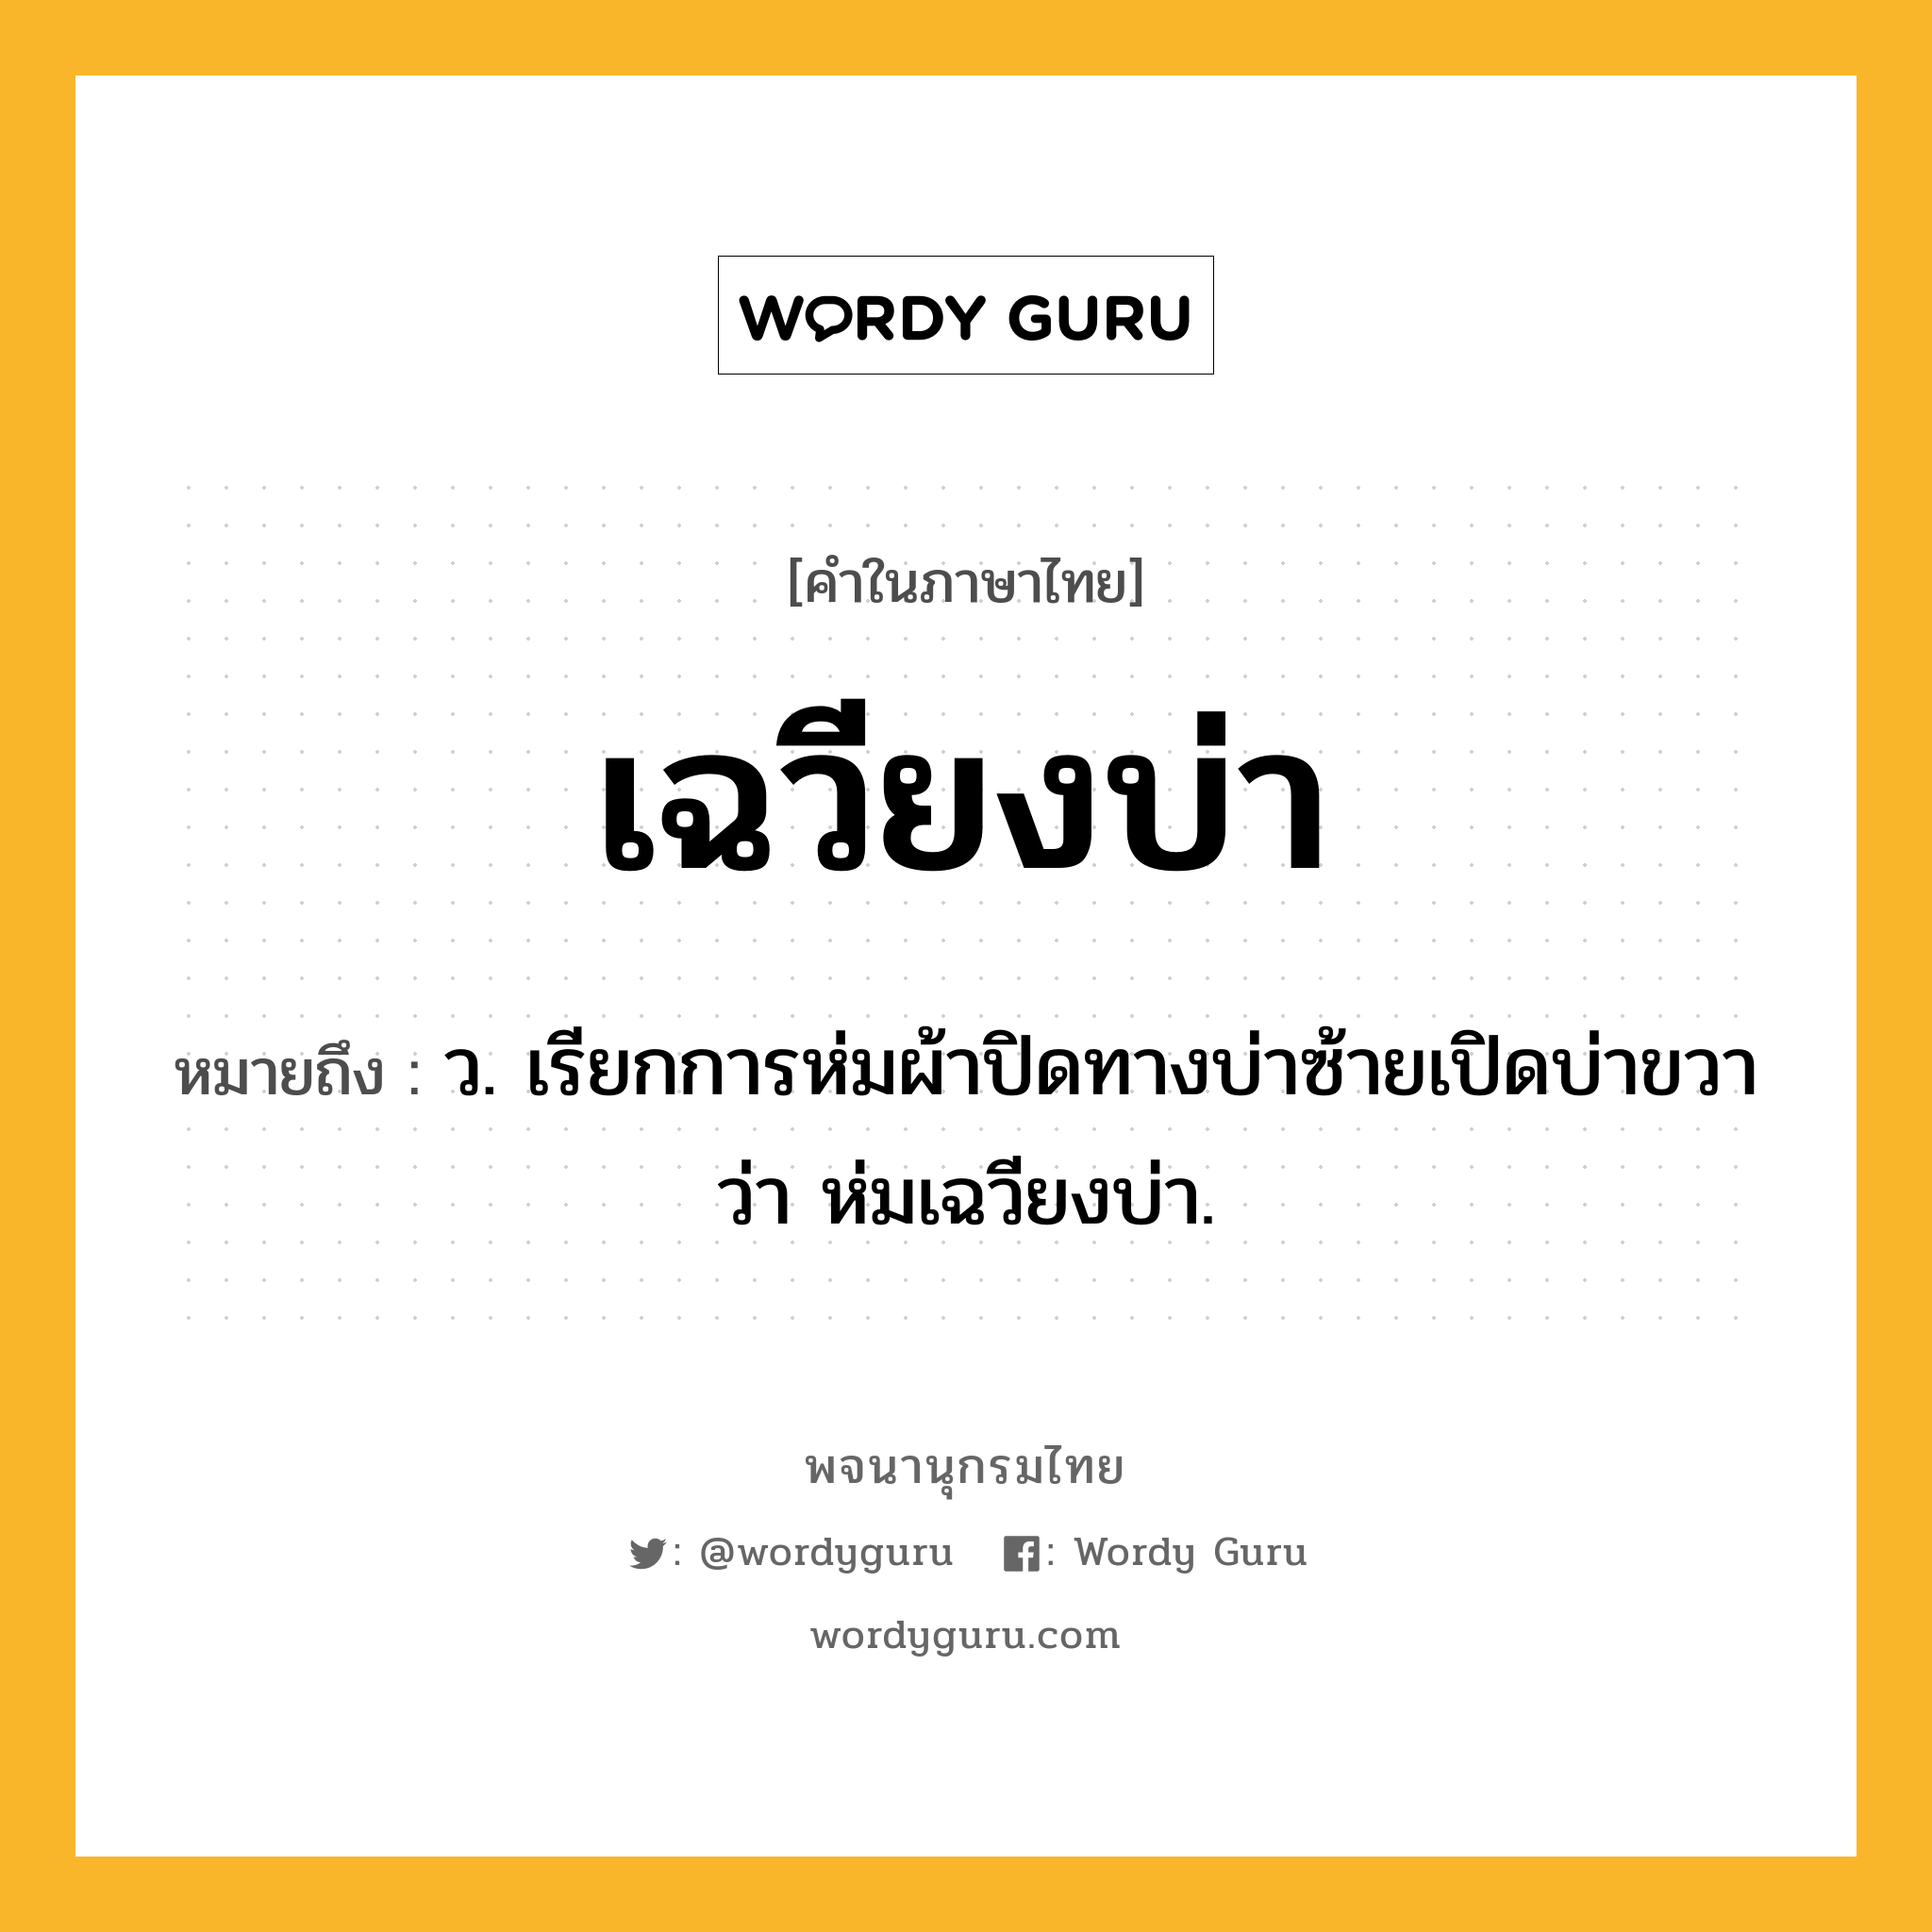 เฉวียงบ่า ความหมาย หมายถึงอะไร?, คำในภาษาไทย เฉวียงบ่า หมายถึง ว. เรียกการห่มผ้าปิดทางบ่าซ้ายเปิดบ่าขวาว่า ห่มเฉวียงบ่า.